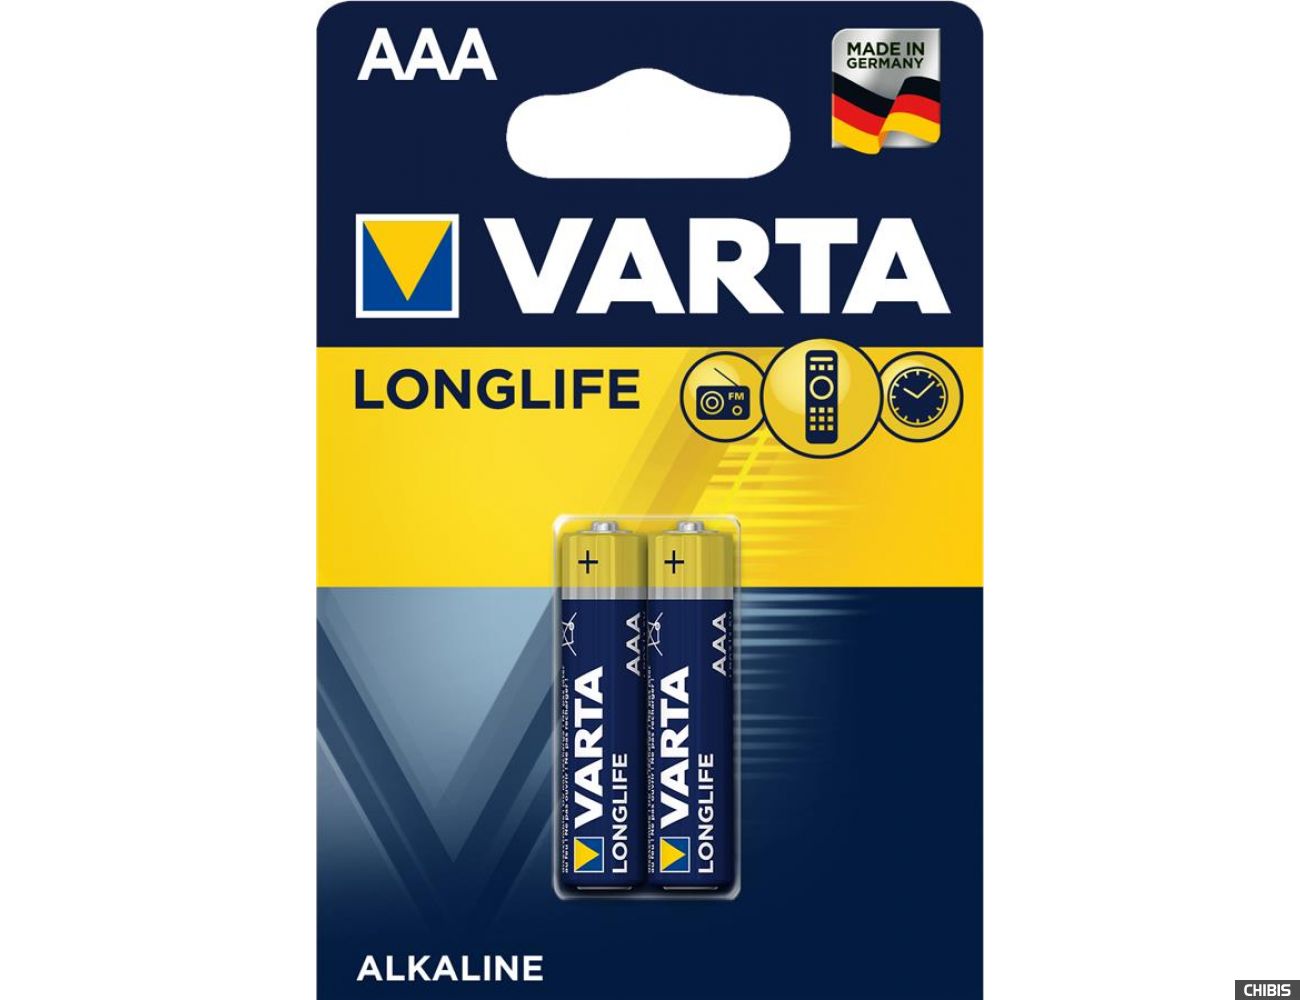 Батарейка ААА Varta Longlife LR03 1.5V Alkaline блистер 2 шт.